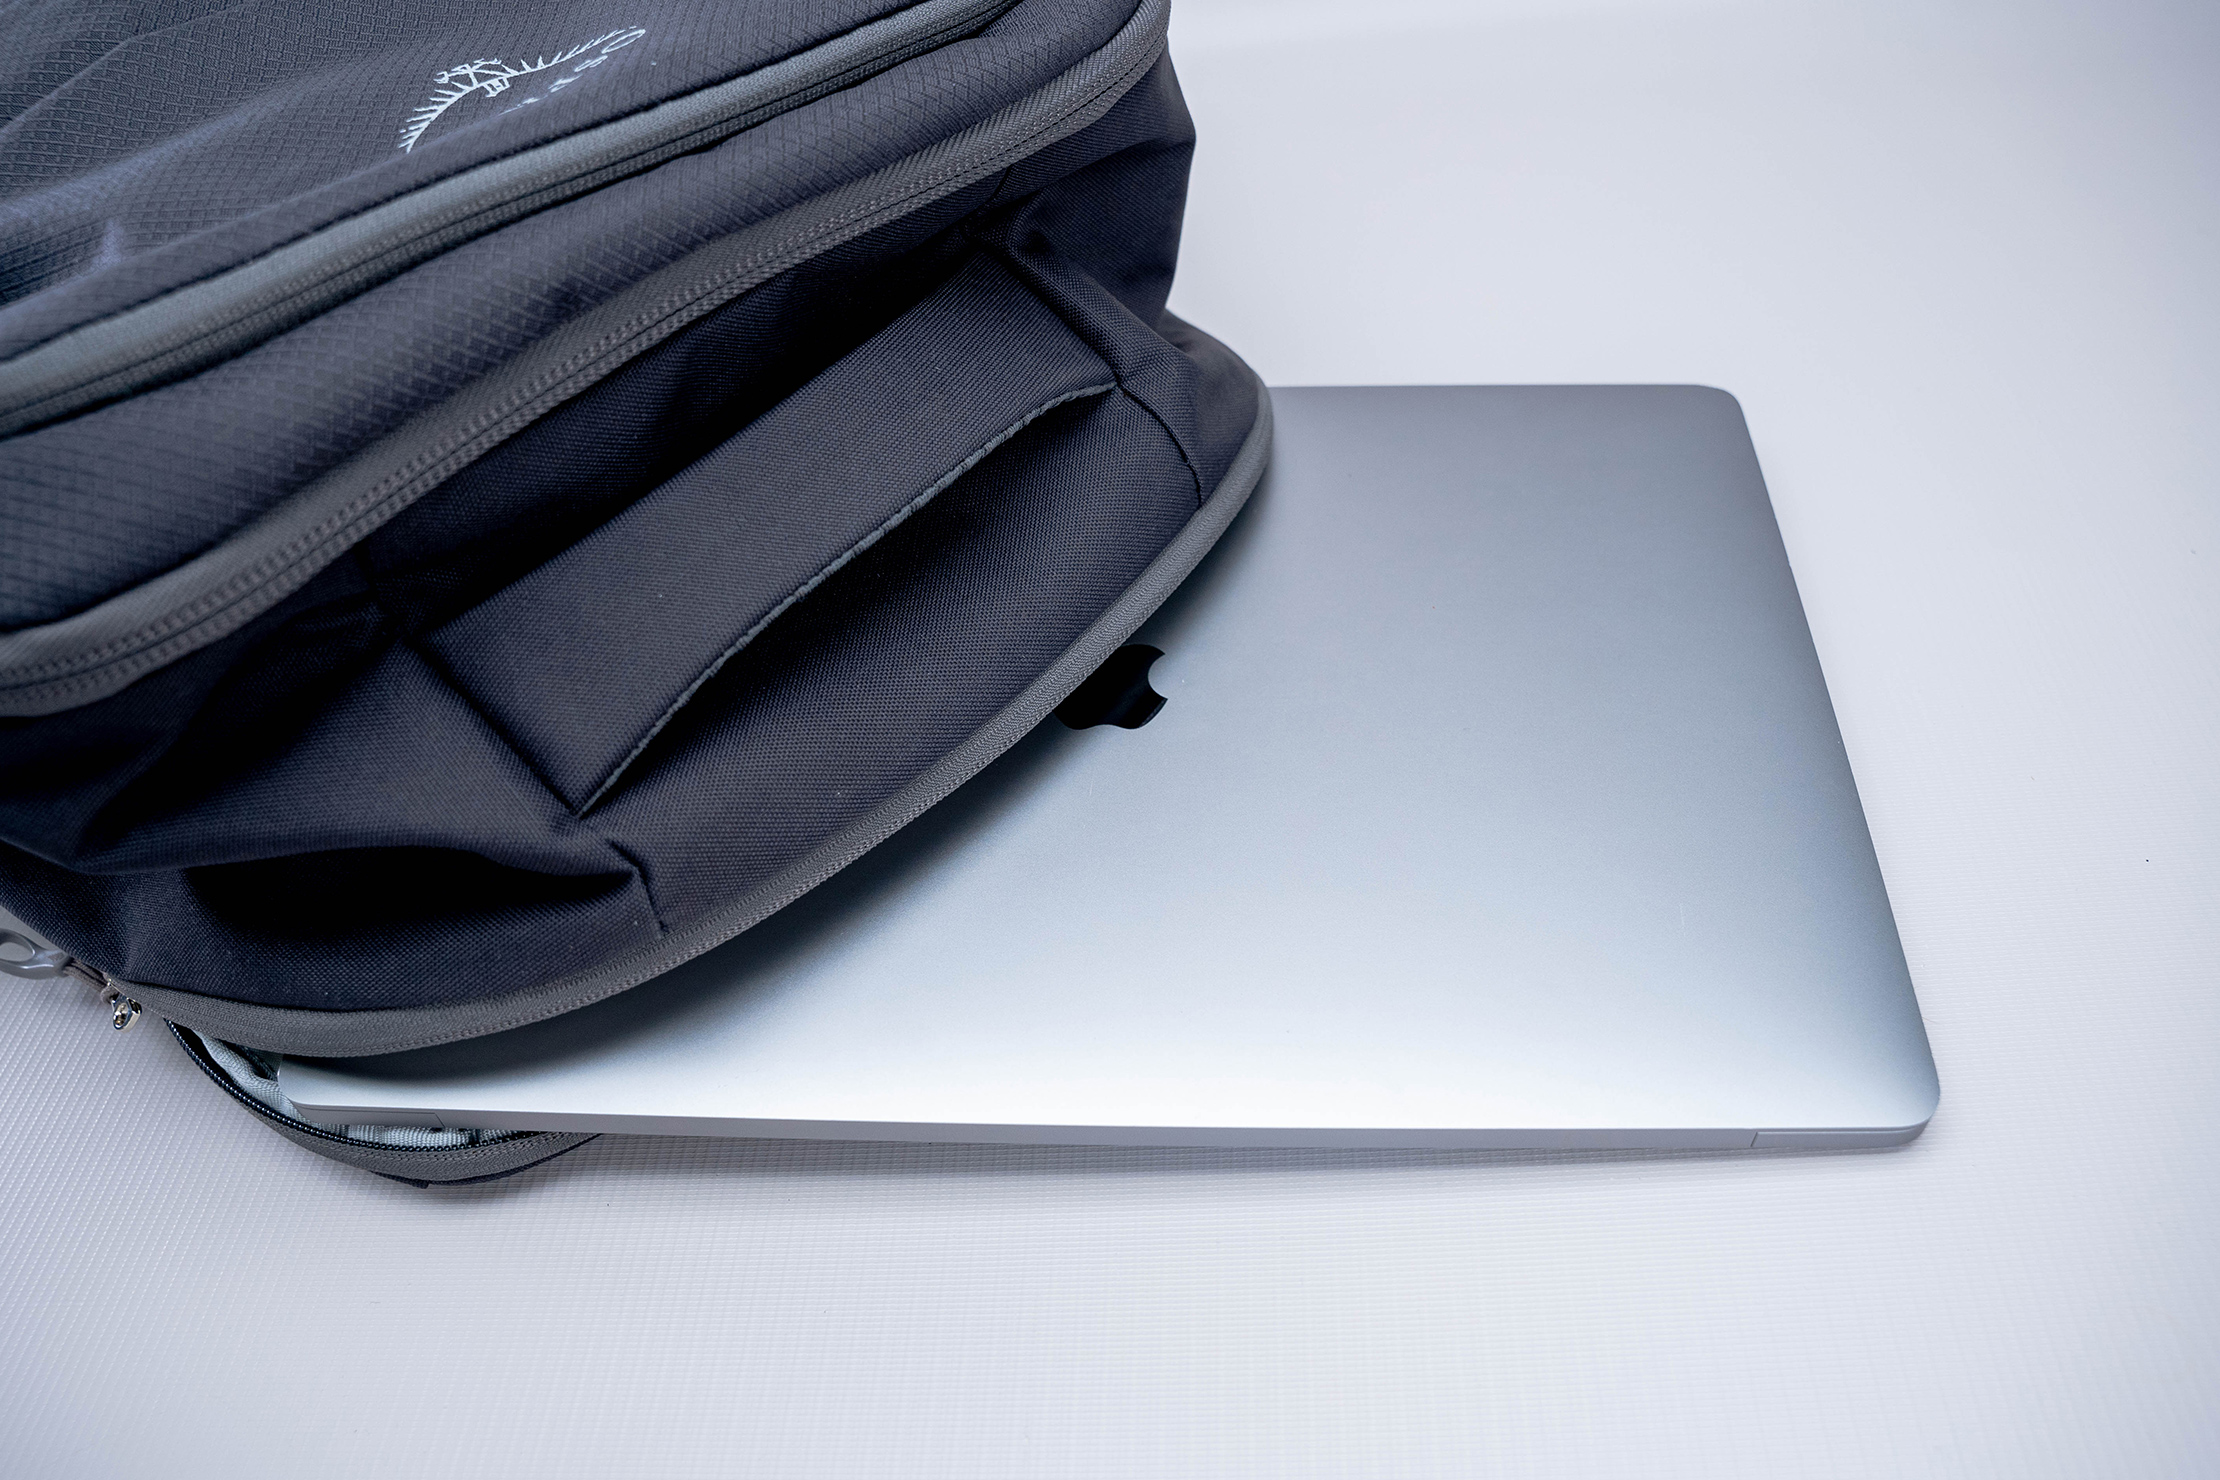 Osprey Daylite Carry-On Travel Pack 44 Laptop